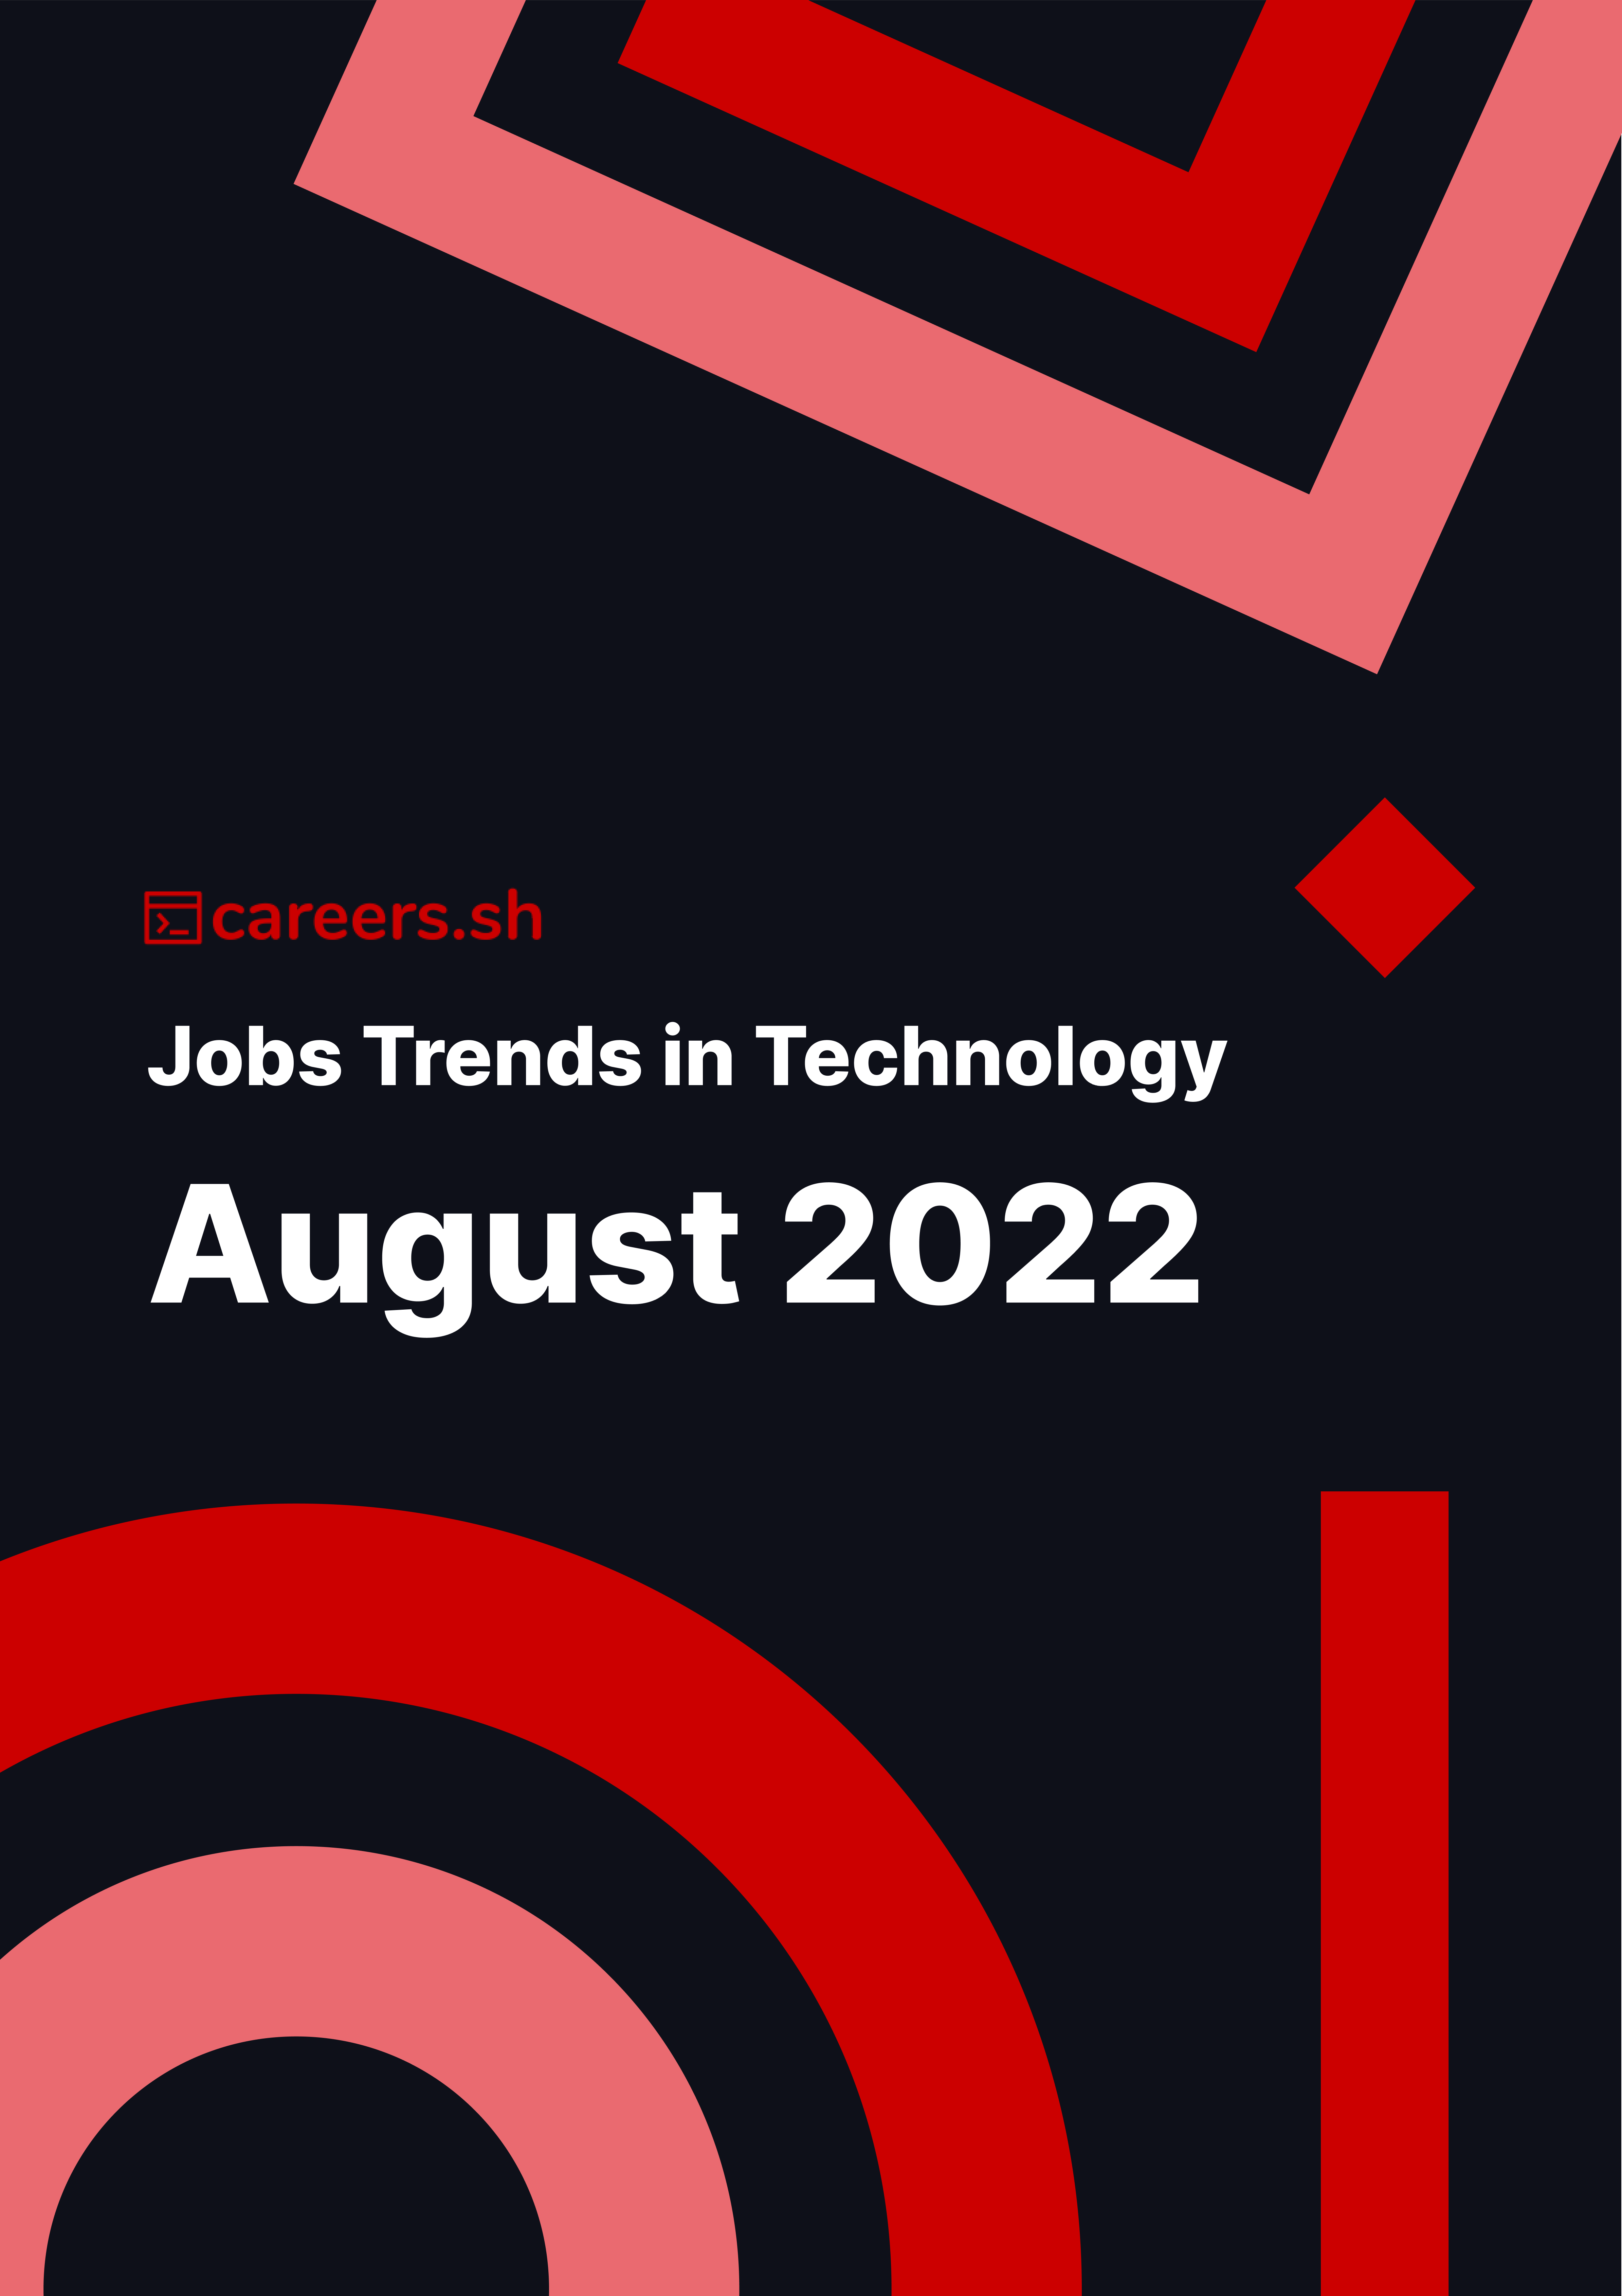 Careers.sh - August 2022